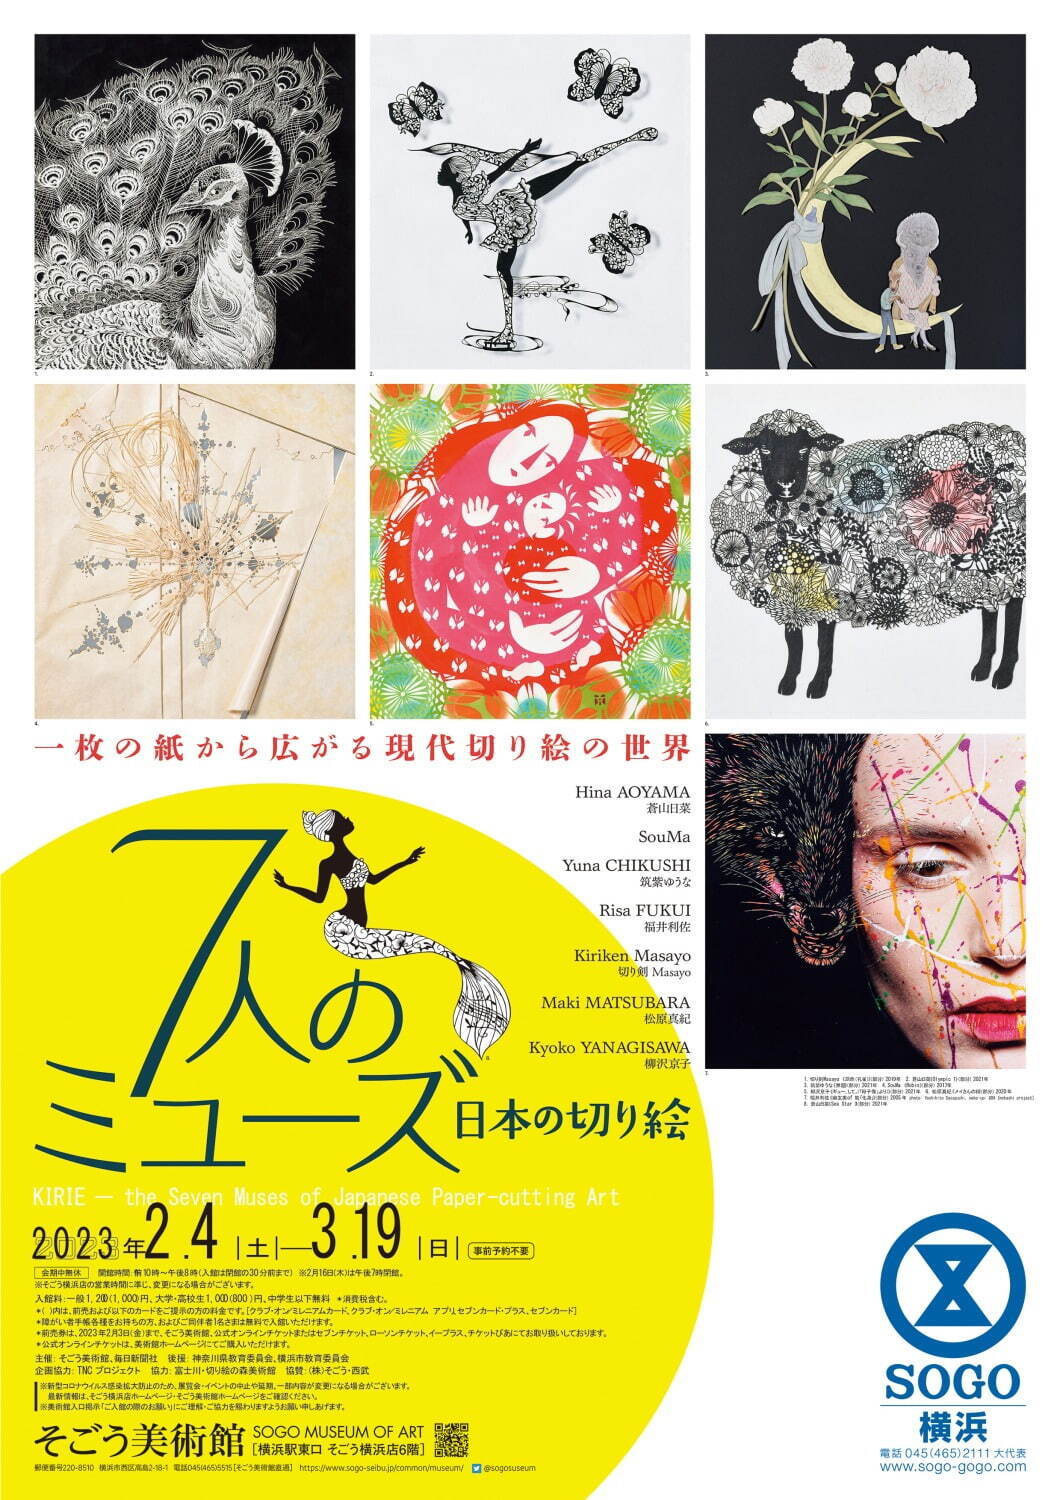 展覧会「日本の切り絵」そごう美術館で - 女性切り絵作家7人の作品約